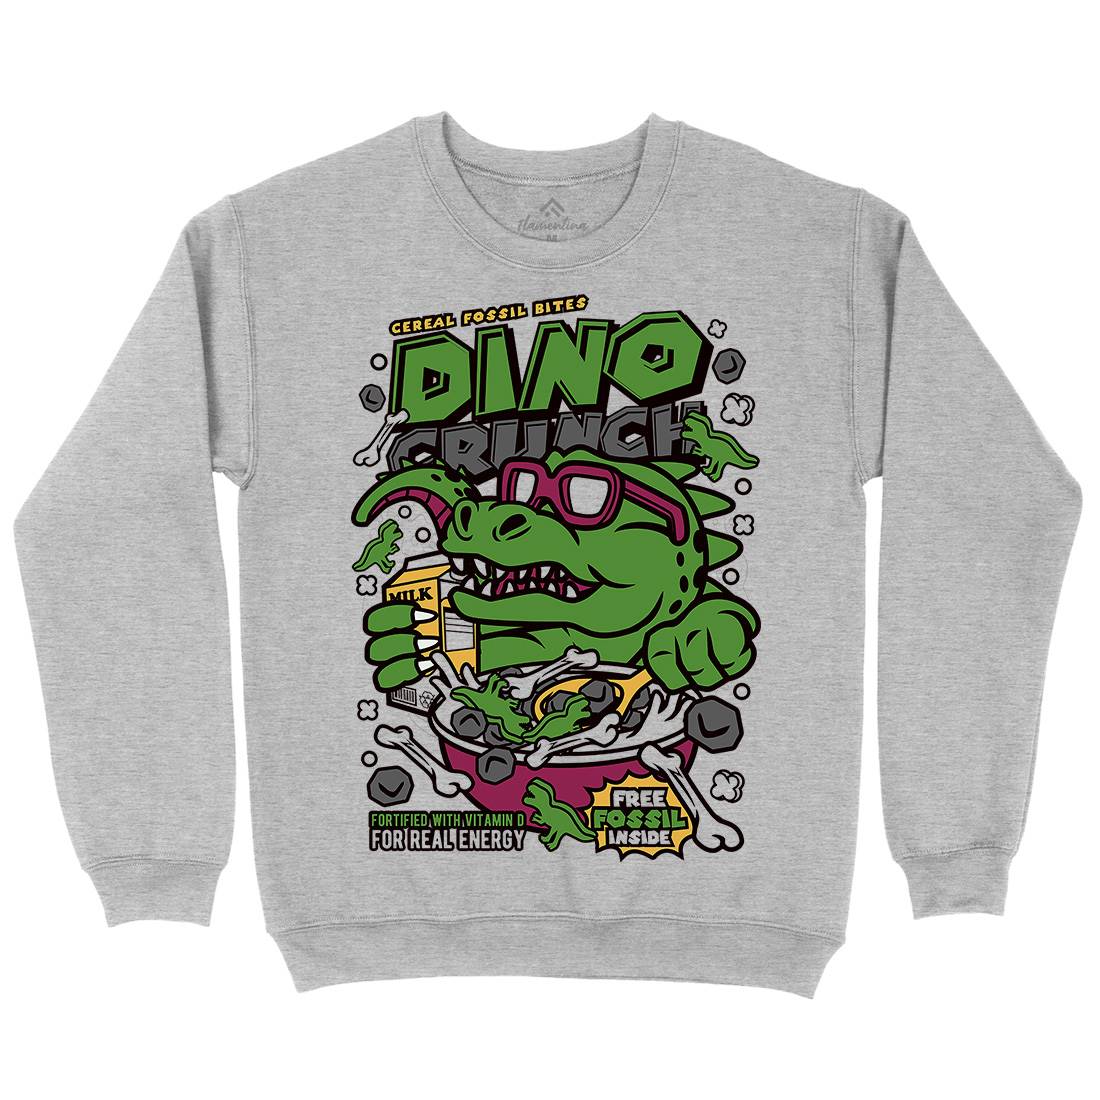 Dino Crunch Mens Crew Neck Sweatshirt Food C534